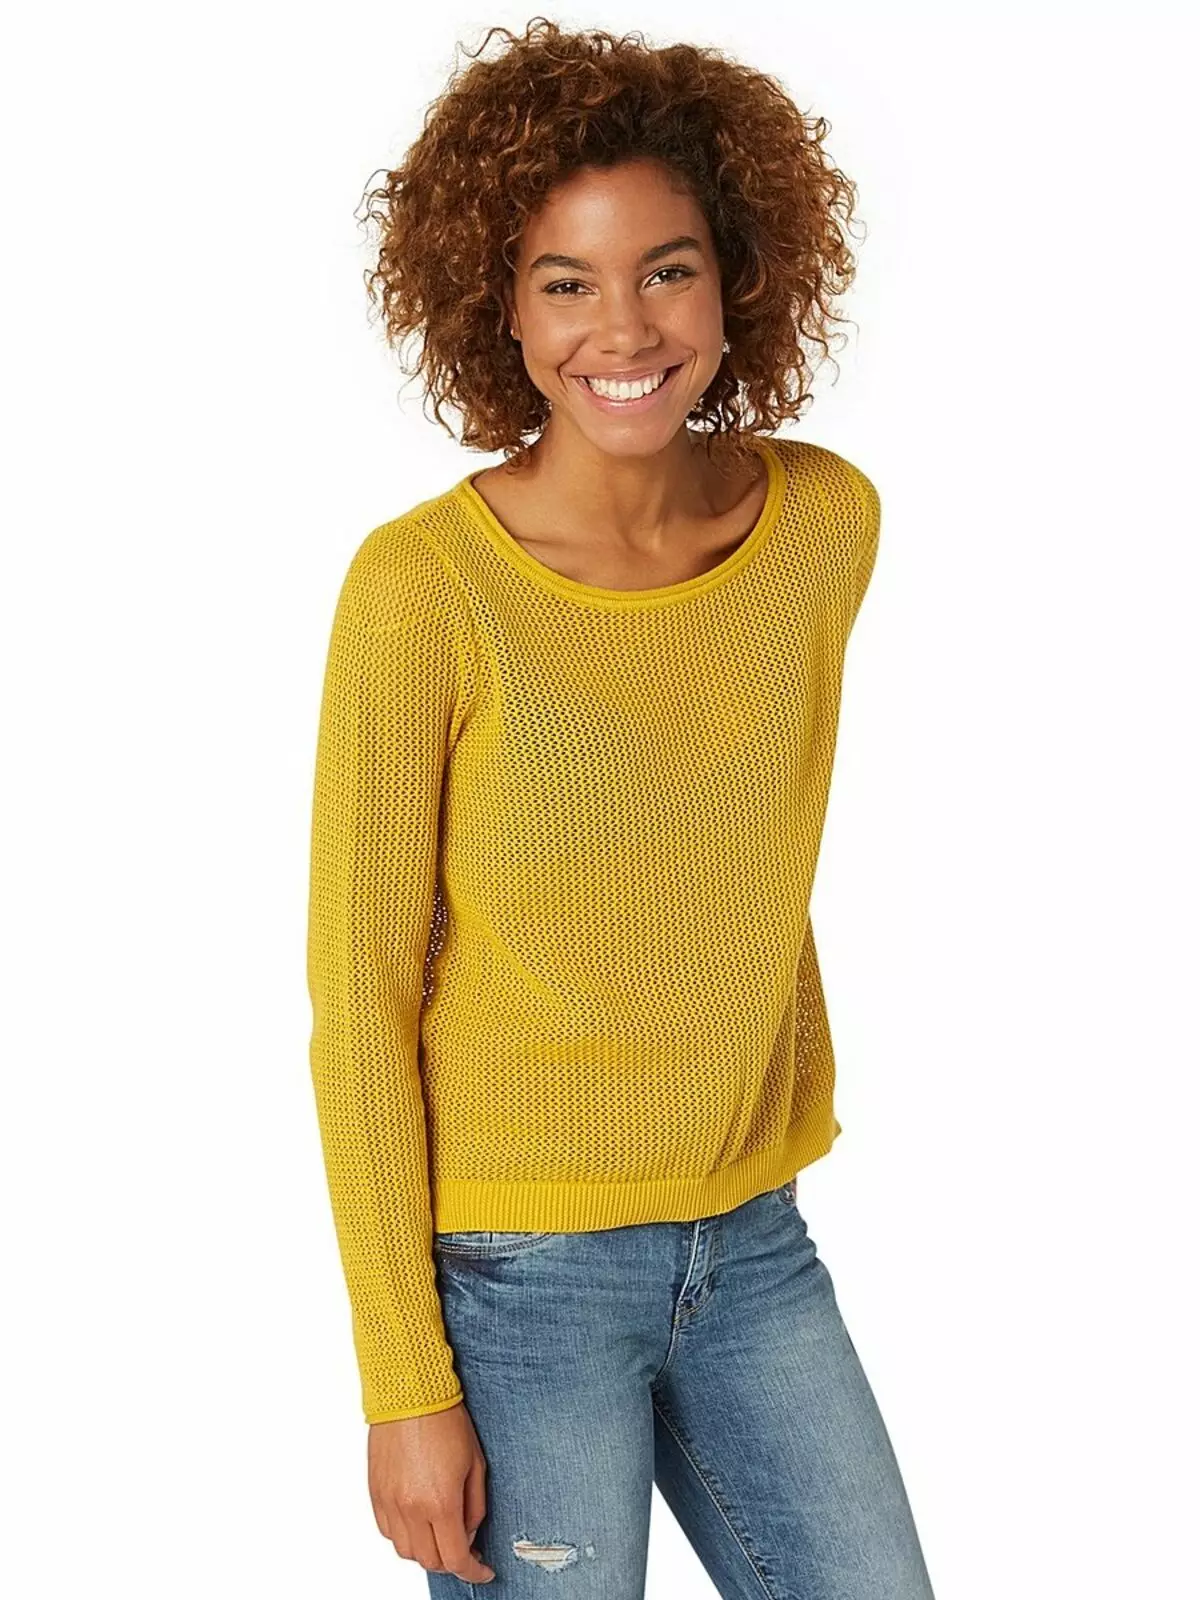 Apa yang perlu memakai sweater kuning (78 foto) 1050_29